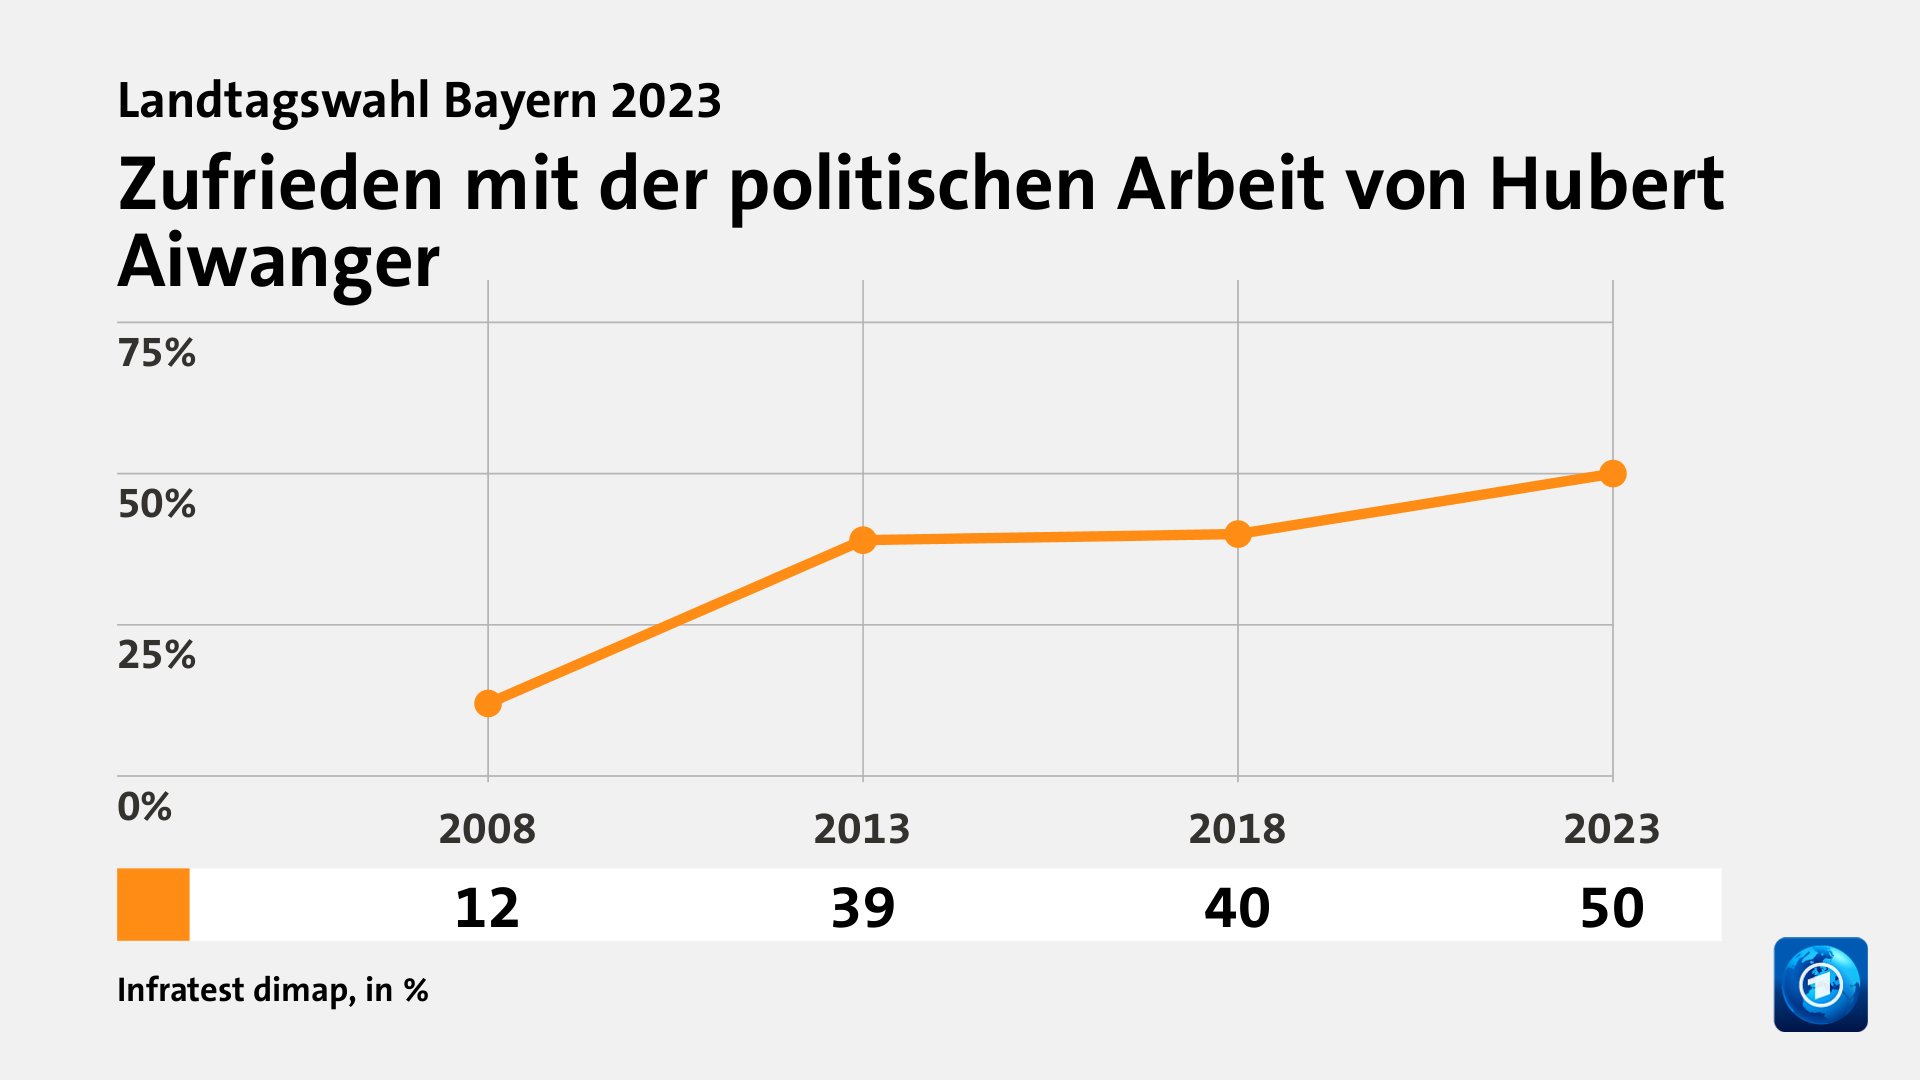 Zufrieden mit der politischen Arbeit von Hubert Aiwanger, in % (Werte von 2023):  50,0 , Quelle: Infratest dimap